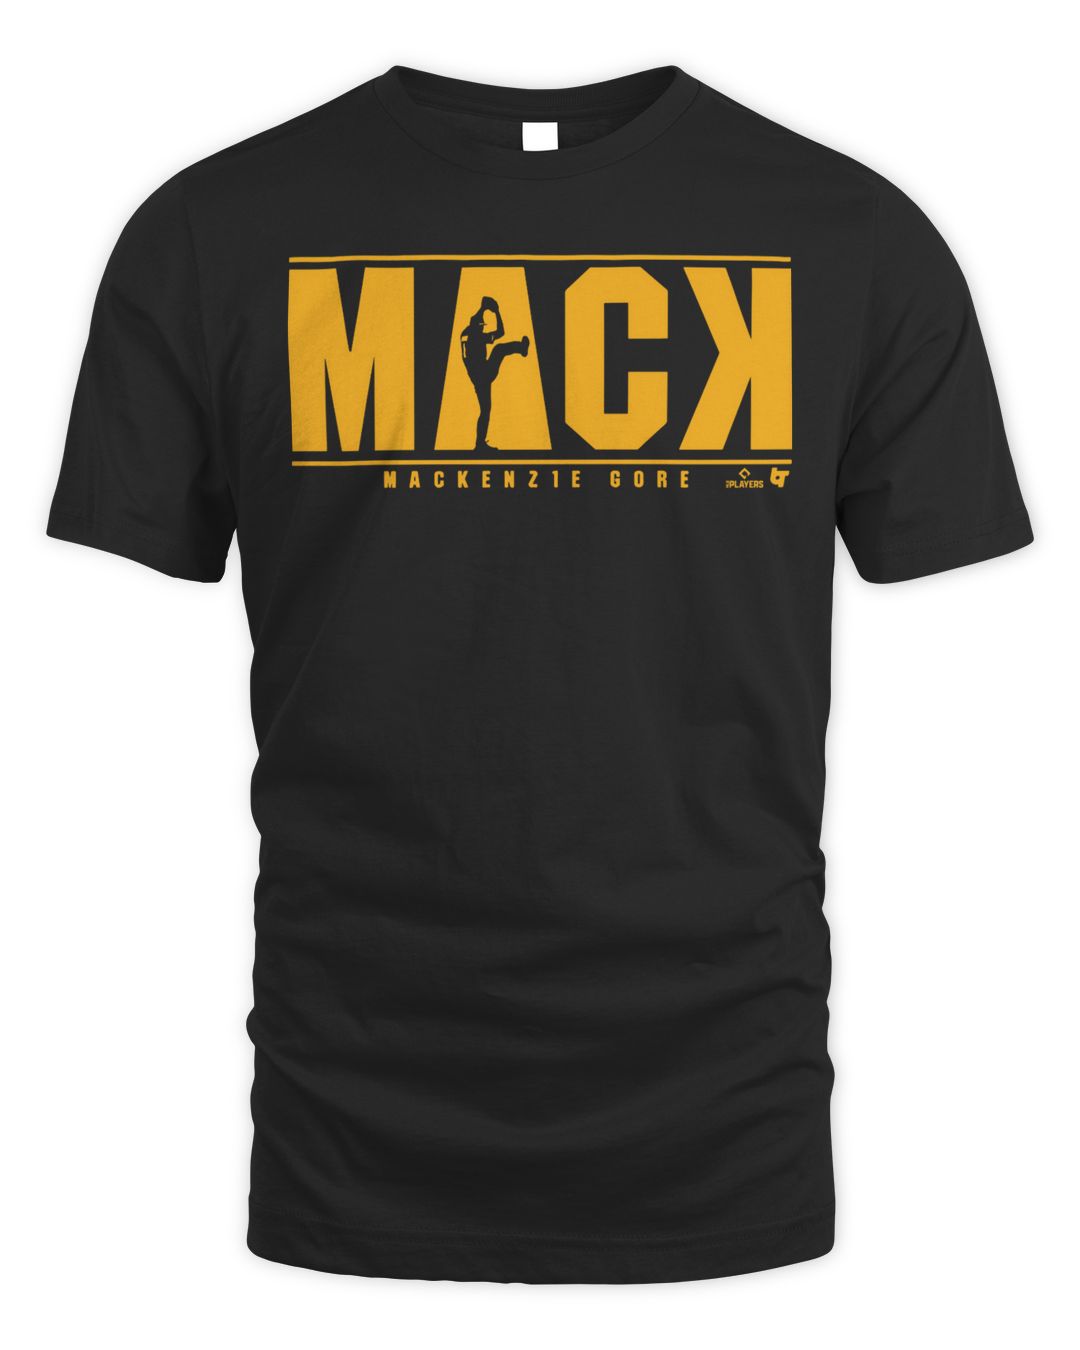 Mackenzie Gore Mack Shirt